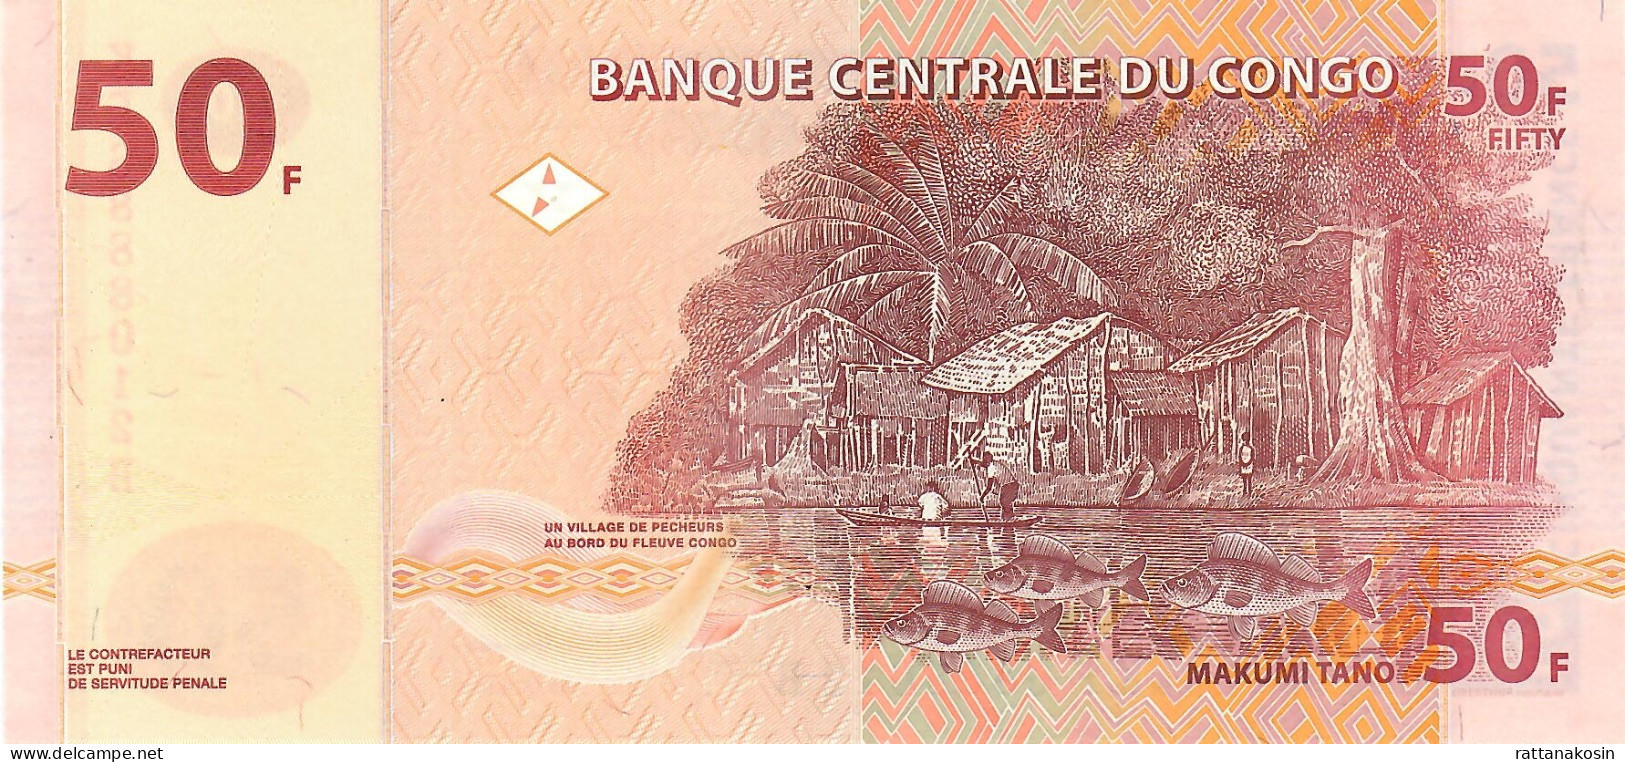 CONGO P97e  50 Francs 2022 Signature 3 #KF/B  OBERTHUR UNC. - République Démocratique Du Congo & Zaïre